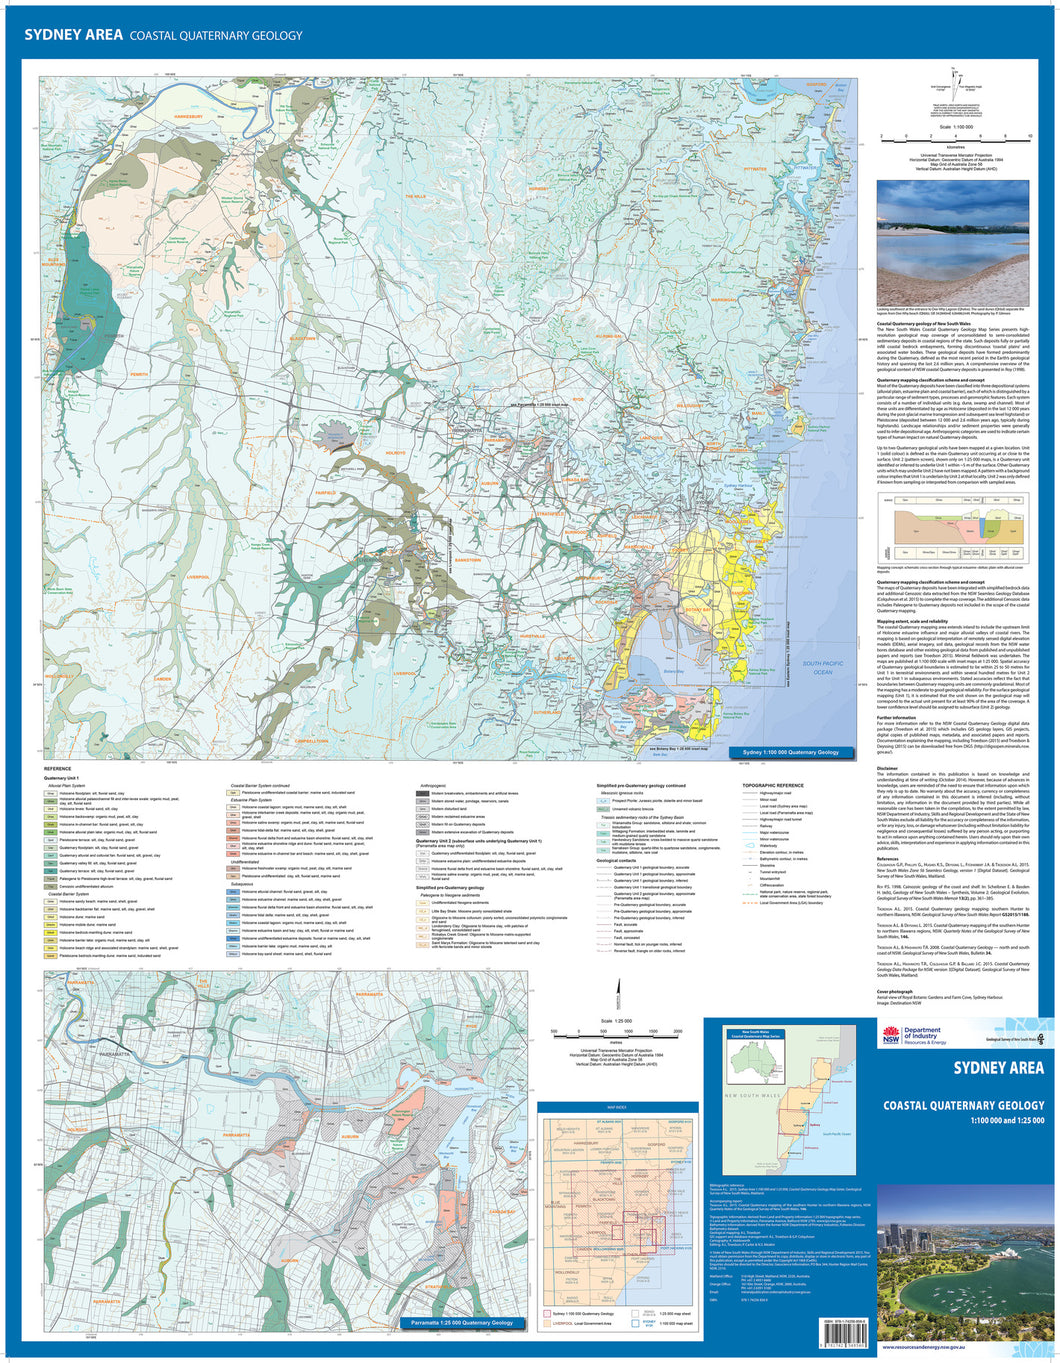 Image of Sydney Area Coastal Quaternary Geology map.